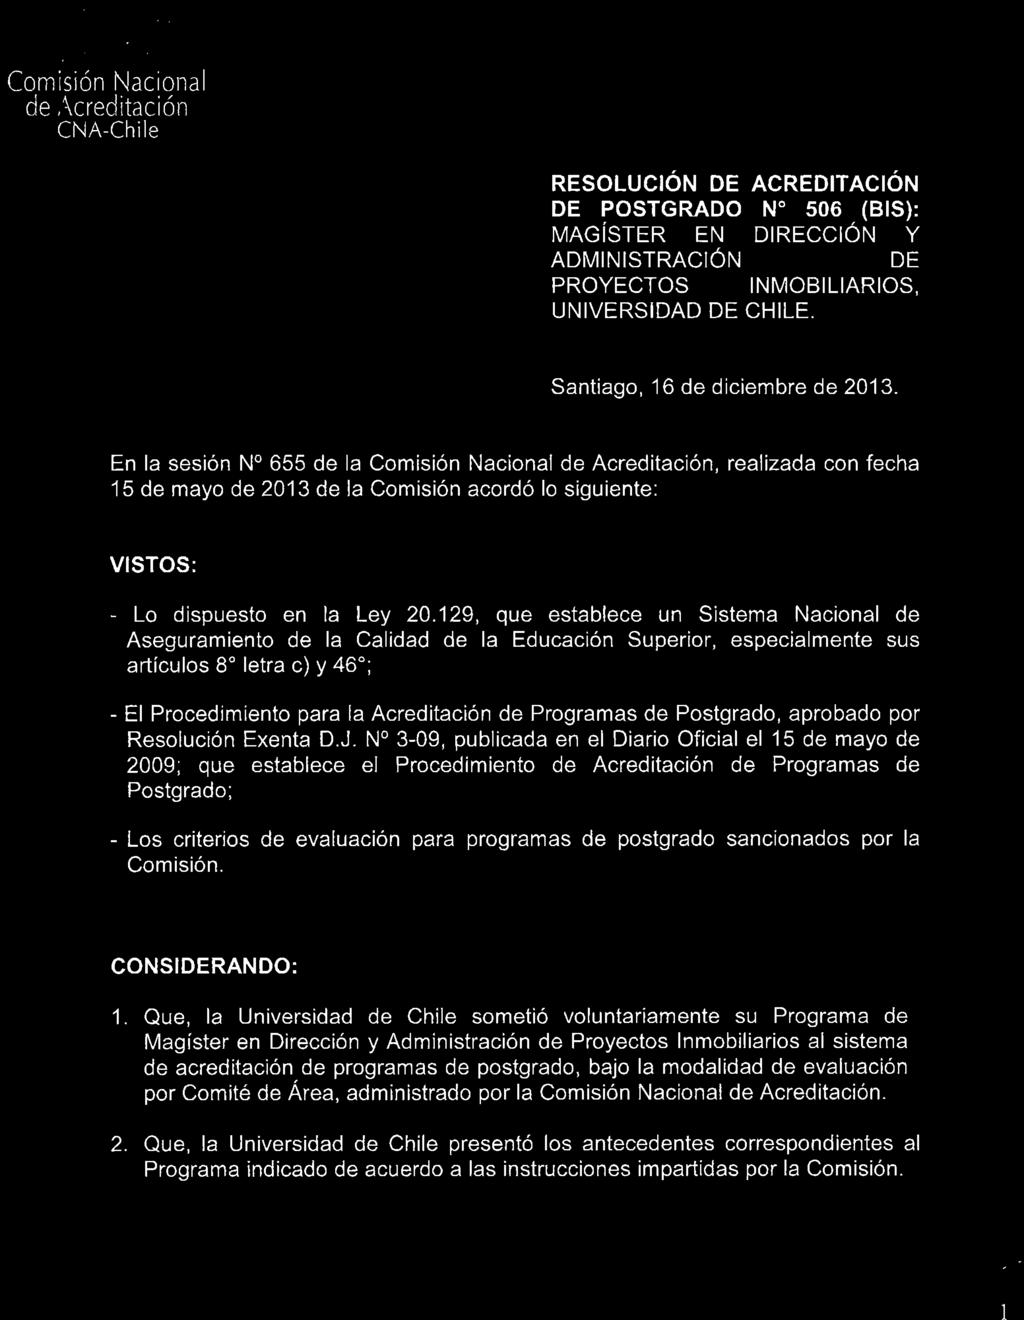 RESOLUCiÓN DE ACREDITACiÓN DE POSTGRADO N 506 (BIS): MAGíSTER EN DIRECCiÓN Y ADMINISTRACiÓN DE PROYECTOS INMOBILIARIOS, UNIVERSIDAD DE CHILE. Santiago, 16 de diciembre de 2013.